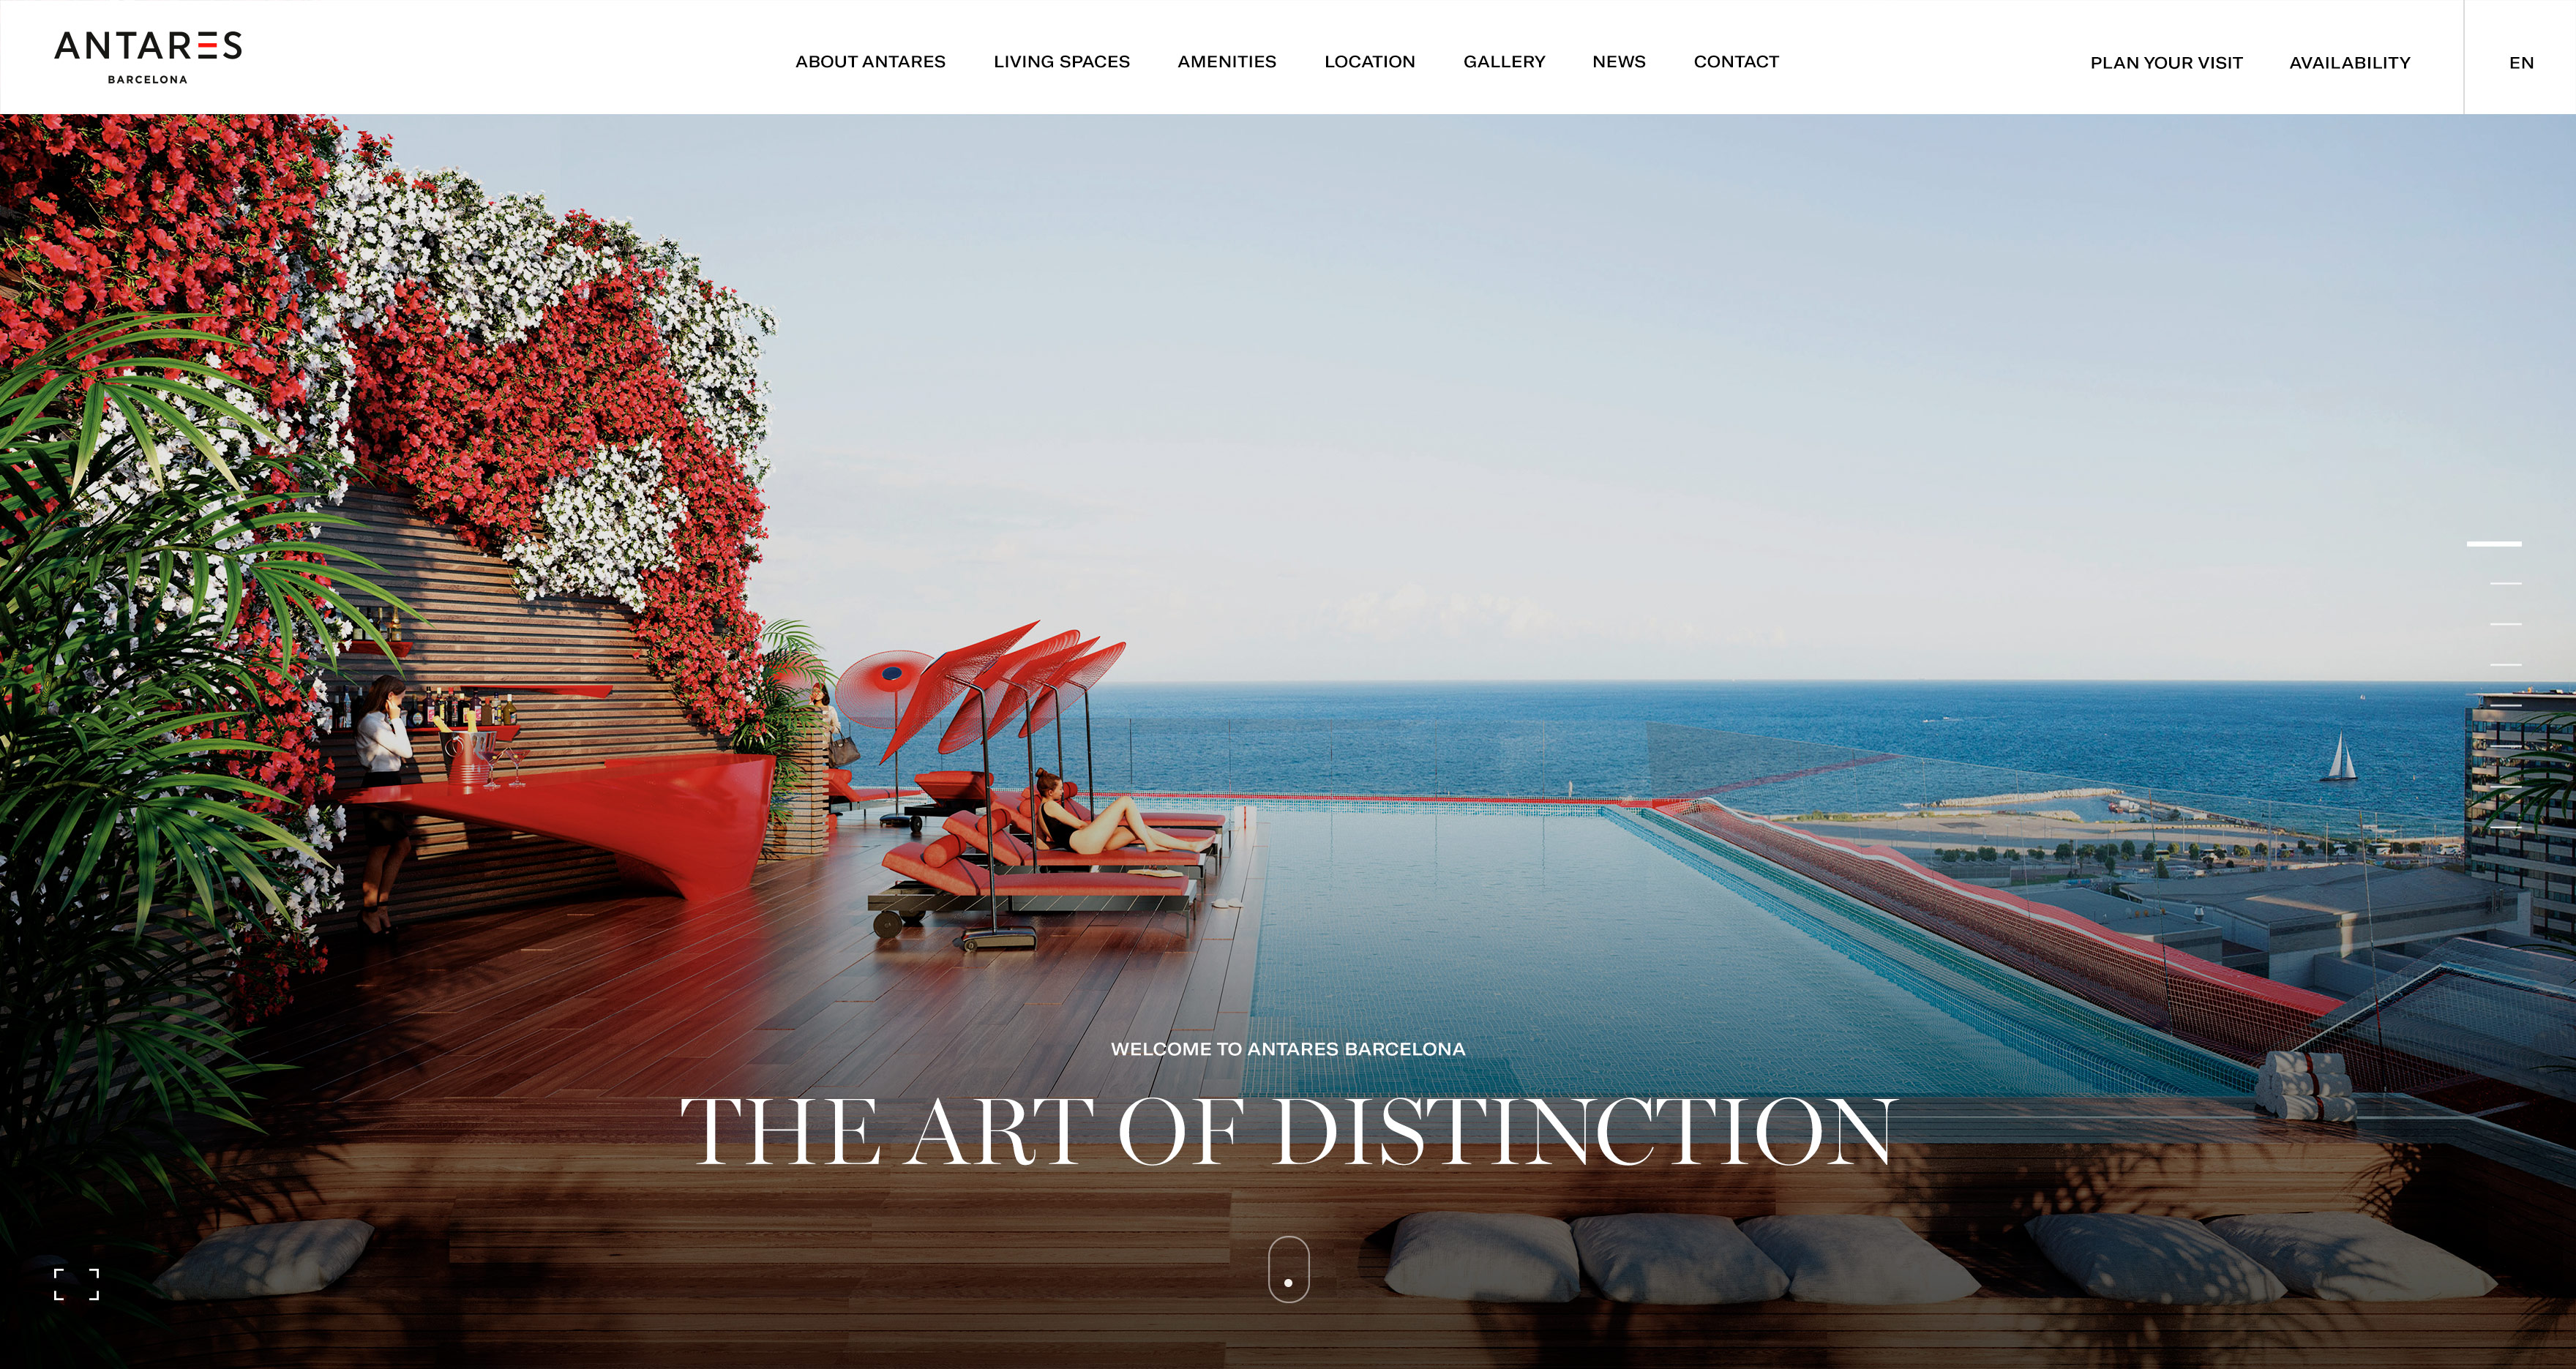 antares barcelona website design homepage kommigraphics